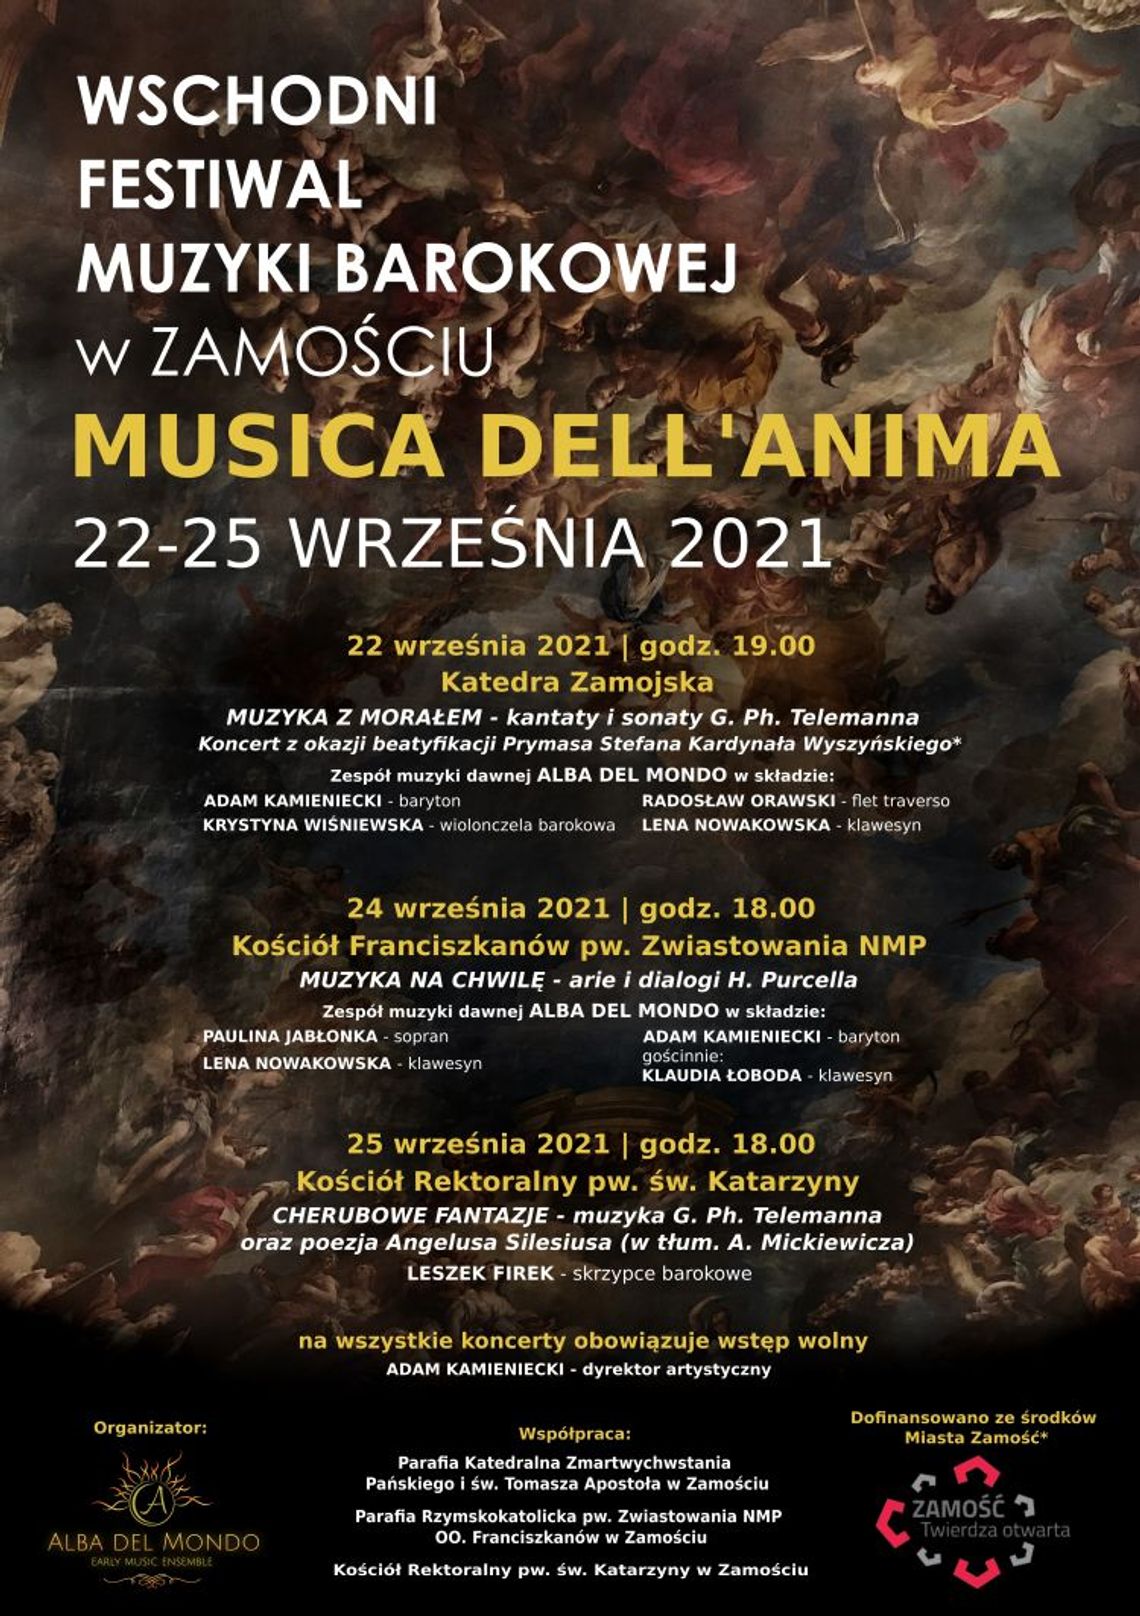 Wschodni Festiwal Muzyki Barokowej Musica dell'Anima w Zamościu